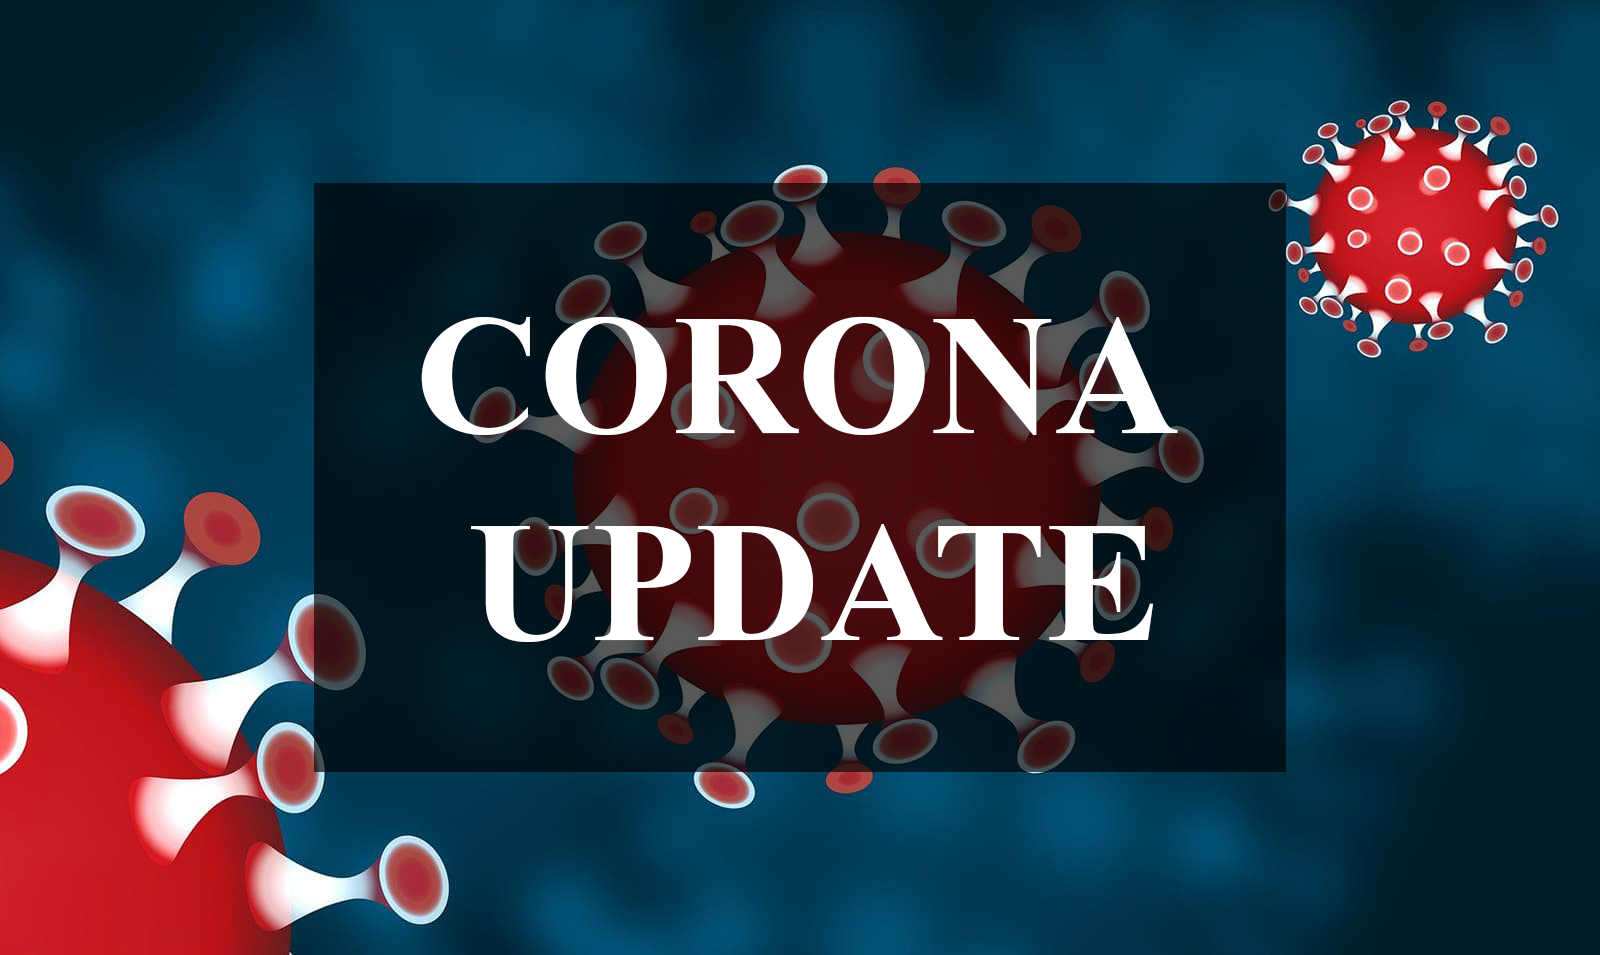 Corona Virus Informationen aktualisiert